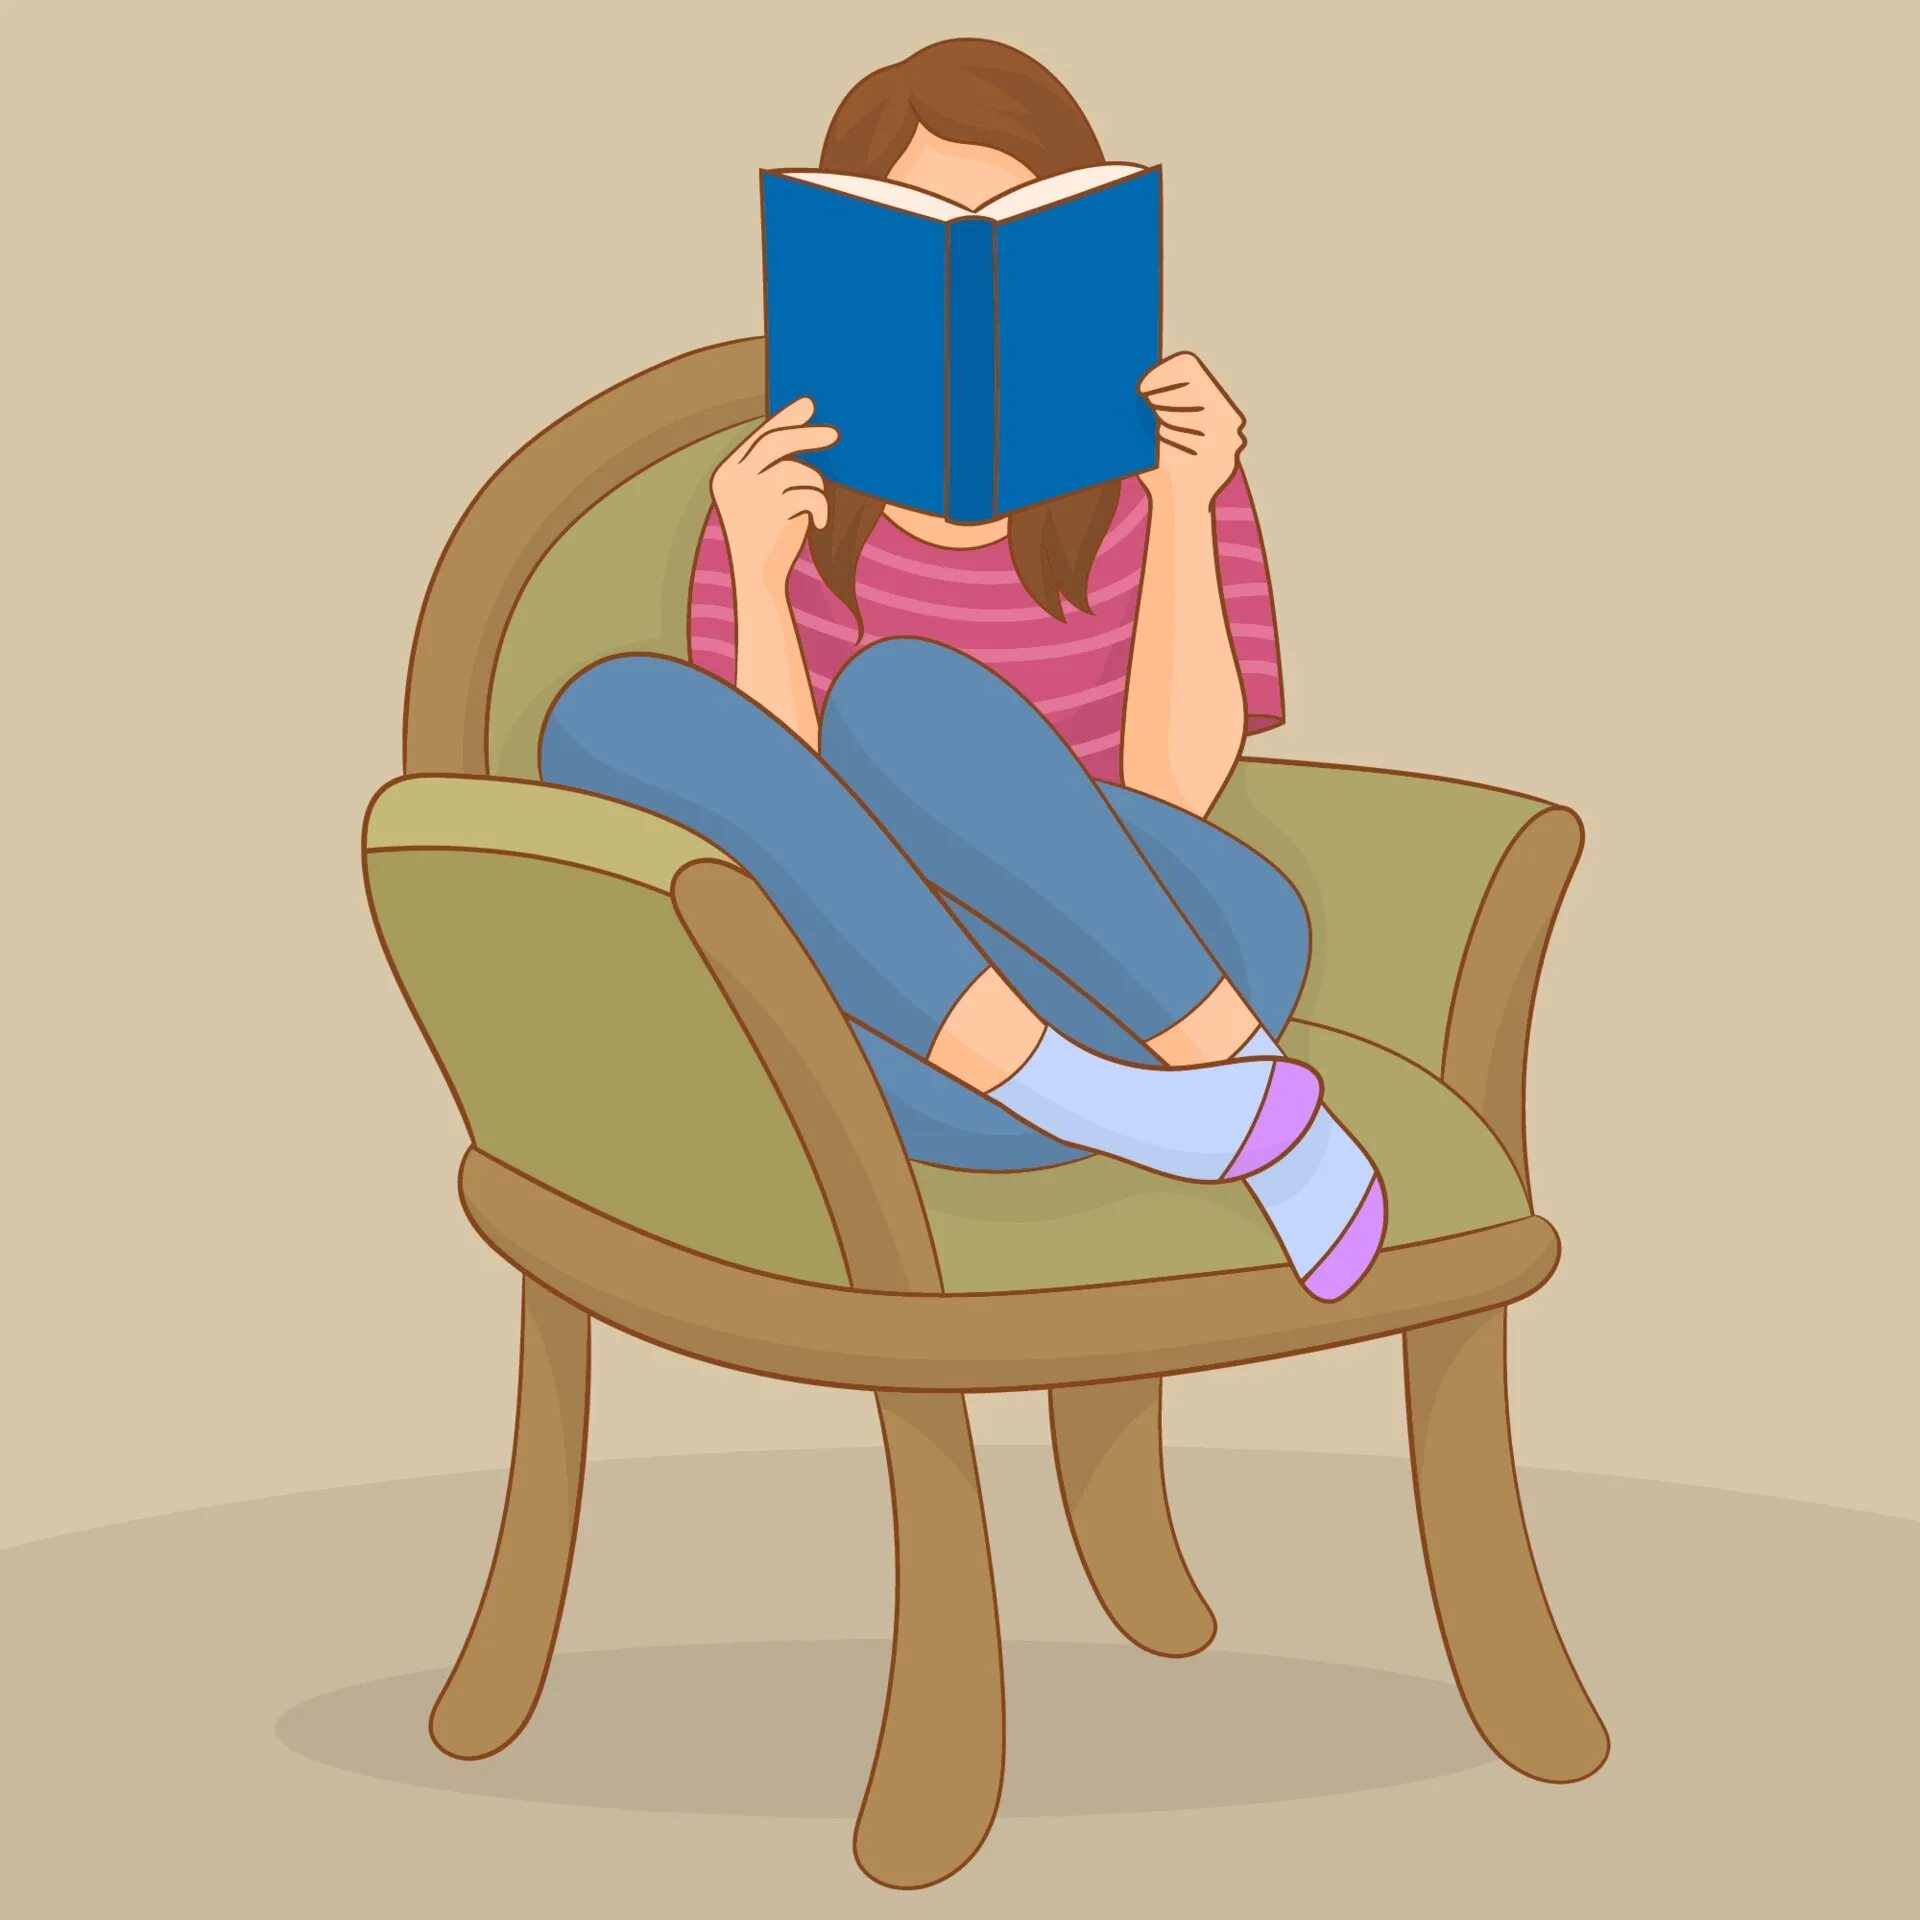 Sided v. Девушка сидит в кресле. Девушка в кресле с книгой. Чтение книг. Человек сидит с книгой.